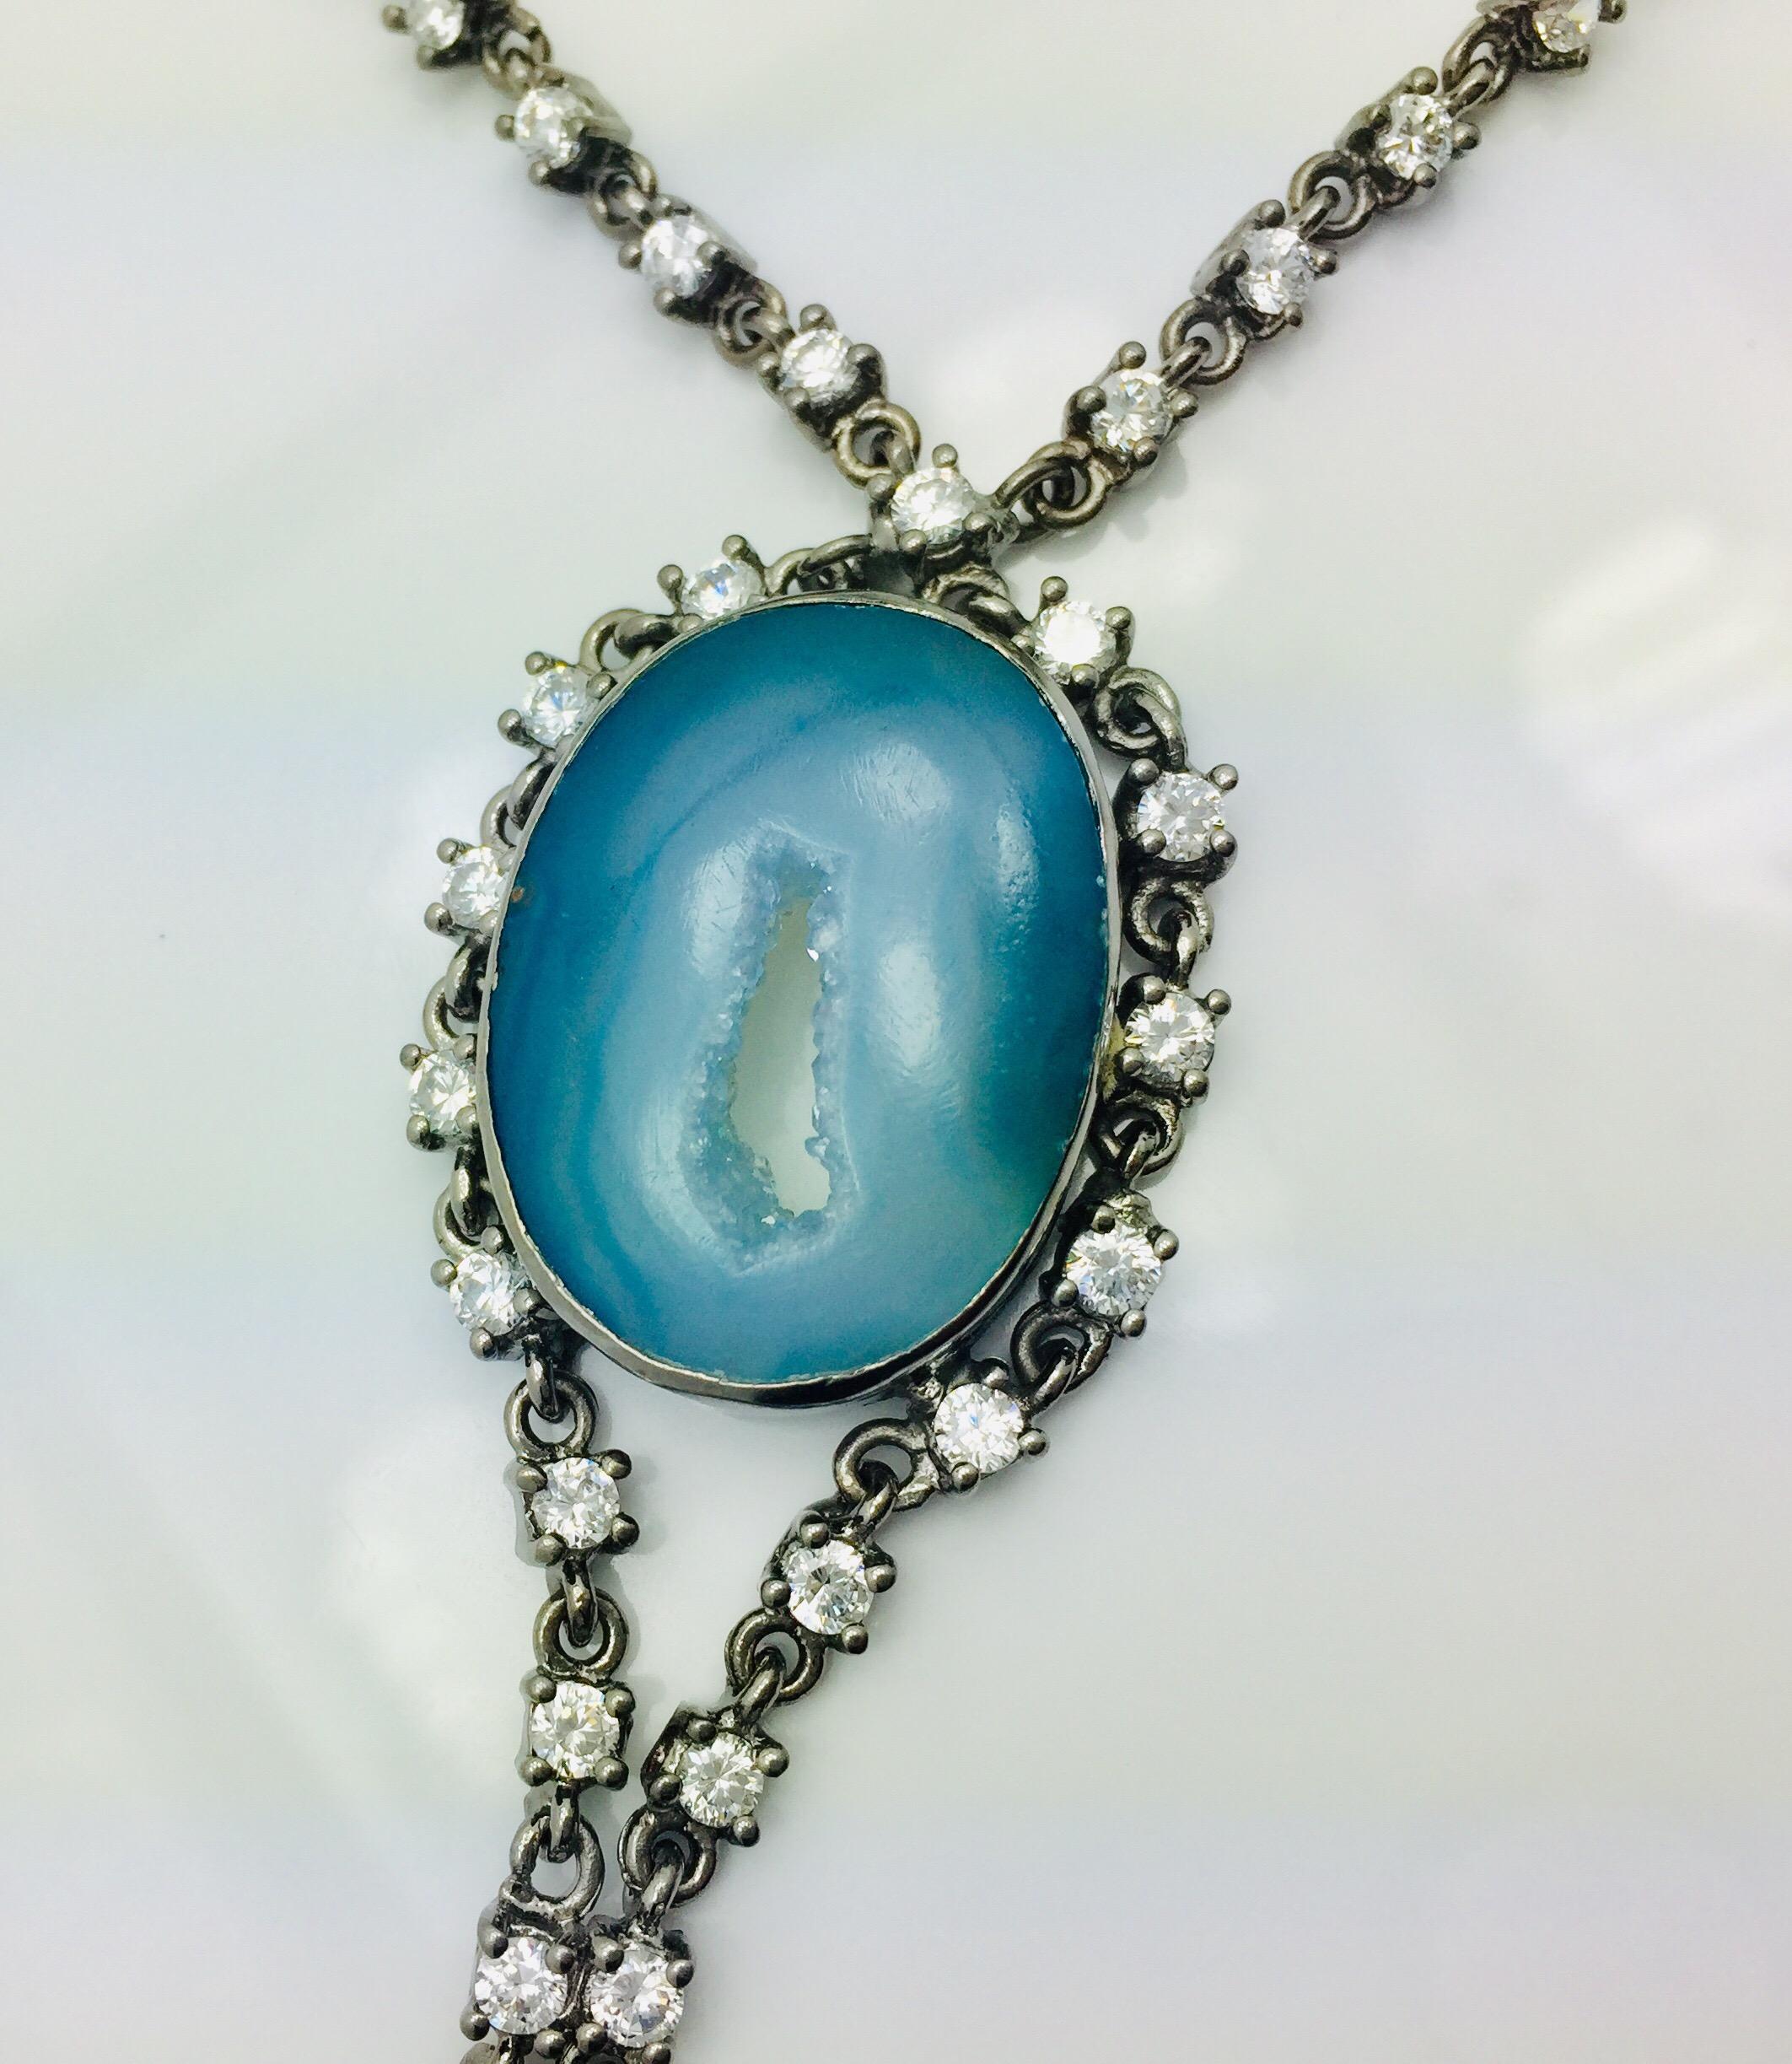 Handgefertigte Achat Geode Druzy Halskette ist mit oxidierten schwarzen Rhodium Kette gefertigt.  Die Halskette besteht aus einem aquablauen Kratergeoden-Druzy, der mit einem kubischen Zirkon verziert ist. 

FOLGEN  MEGHNA JEWELS Storefront, um die